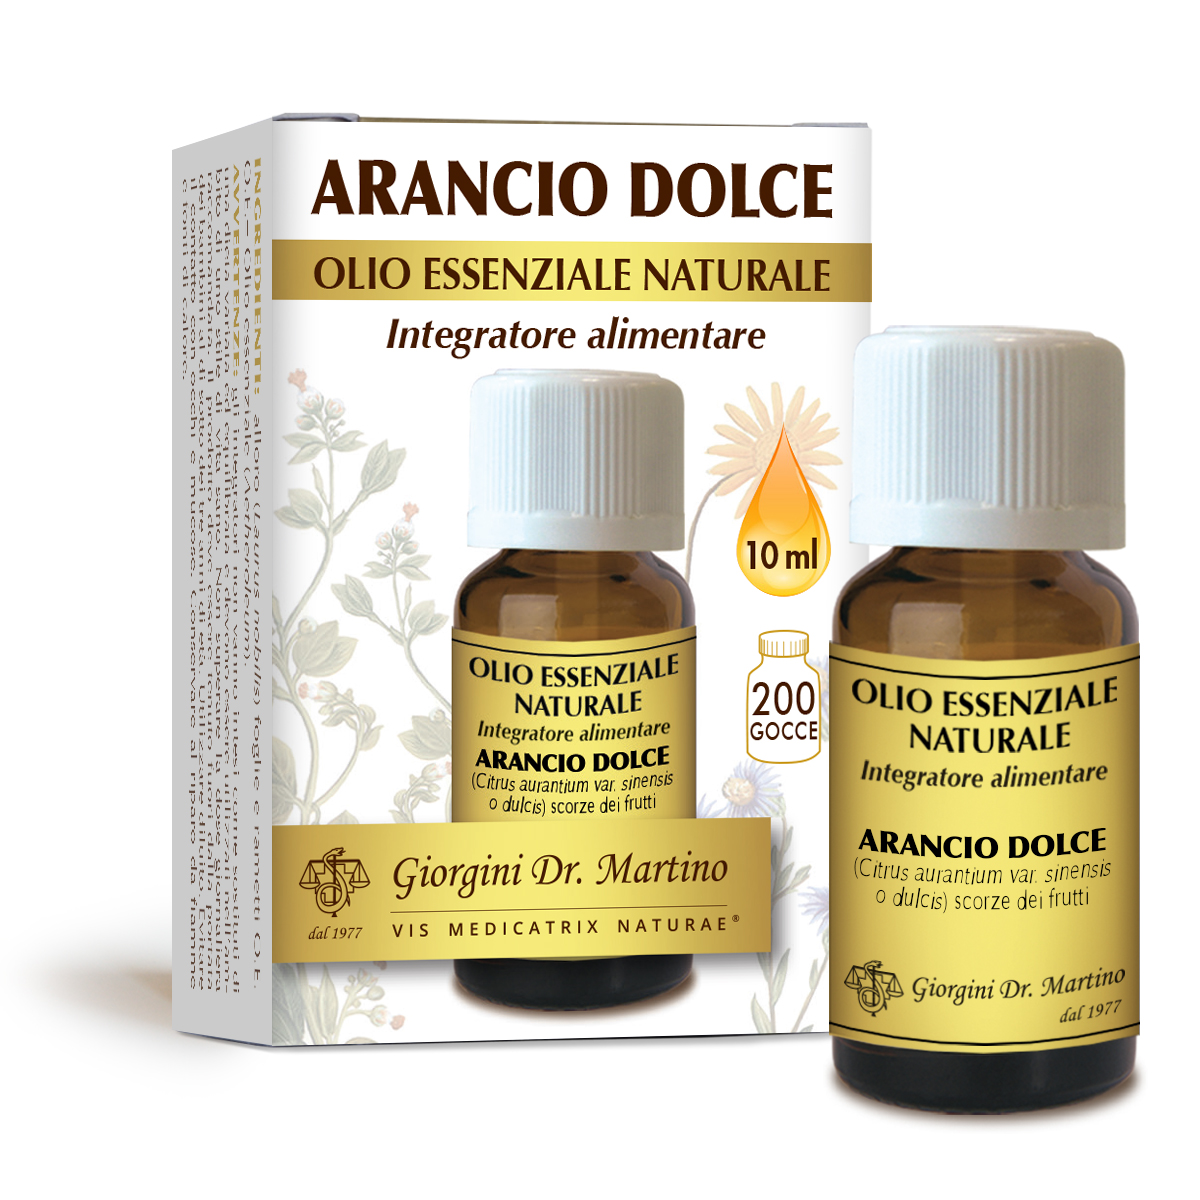 ARANCIO DOLCE olio essenzialenaturale 10 ml